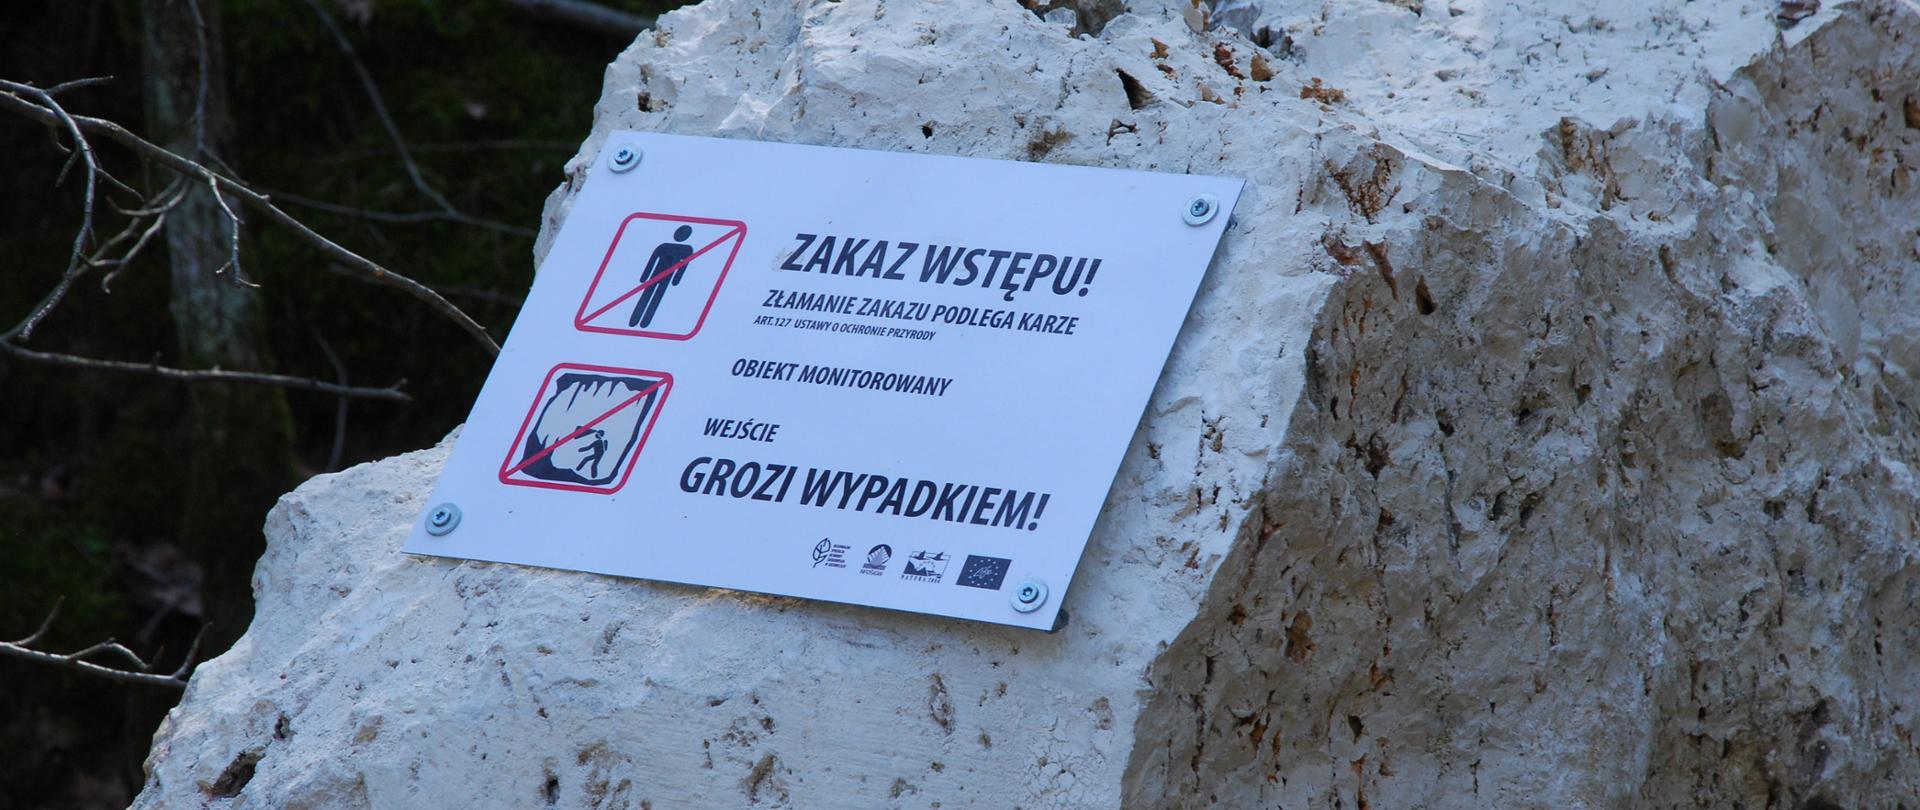 Zdjęcie przedstawia tabliczkę informującą o zakazie wstępu do jaskini w rezerwacie Szachownica